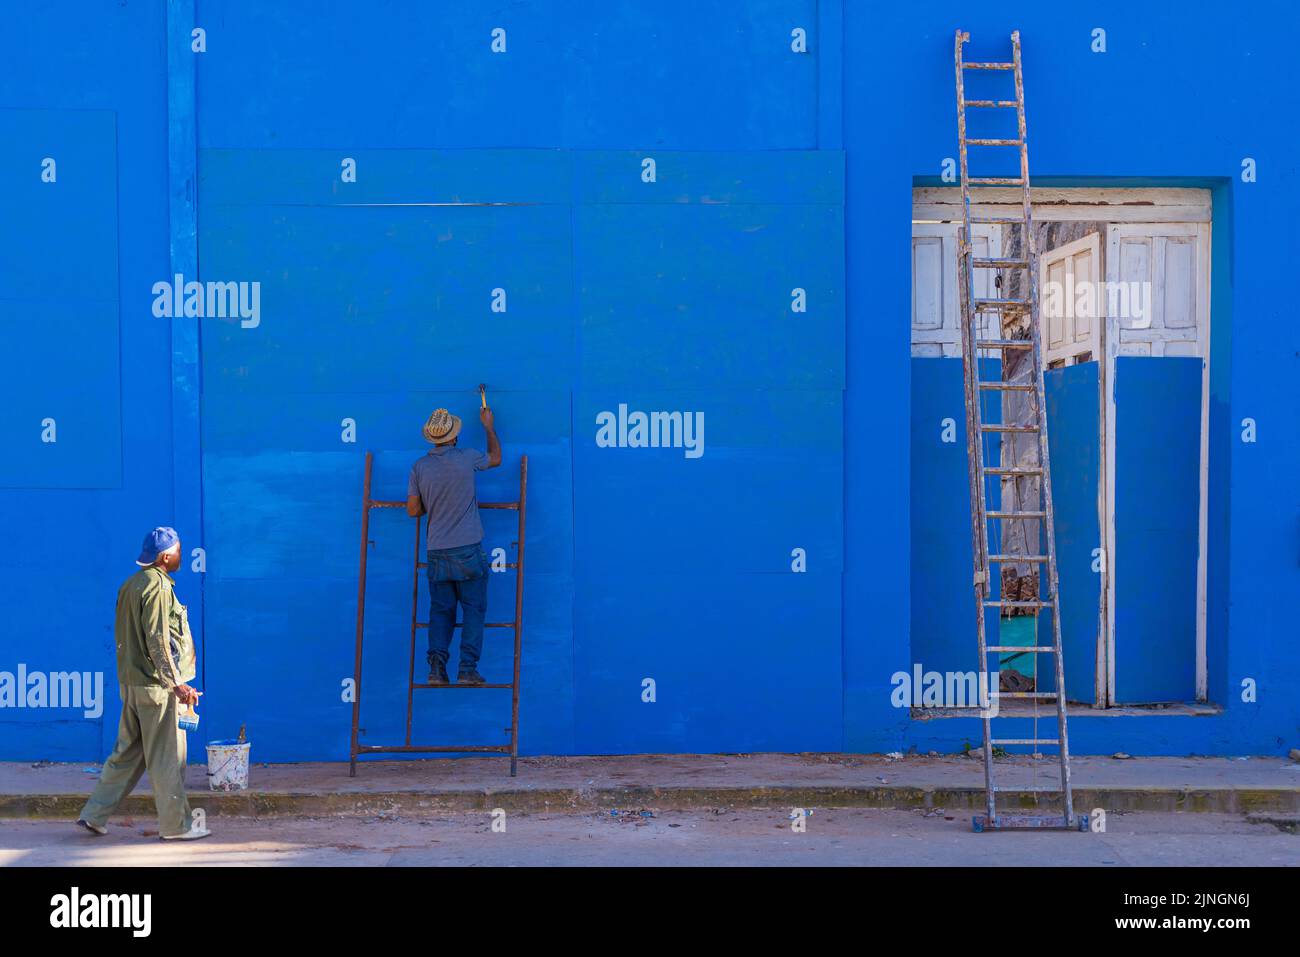 TRINIDAD, CUBA - 7 GENNAIO: Cubani dipingendo un muro blu a Trinidad il 7 gennaio 2021. Foto Stock